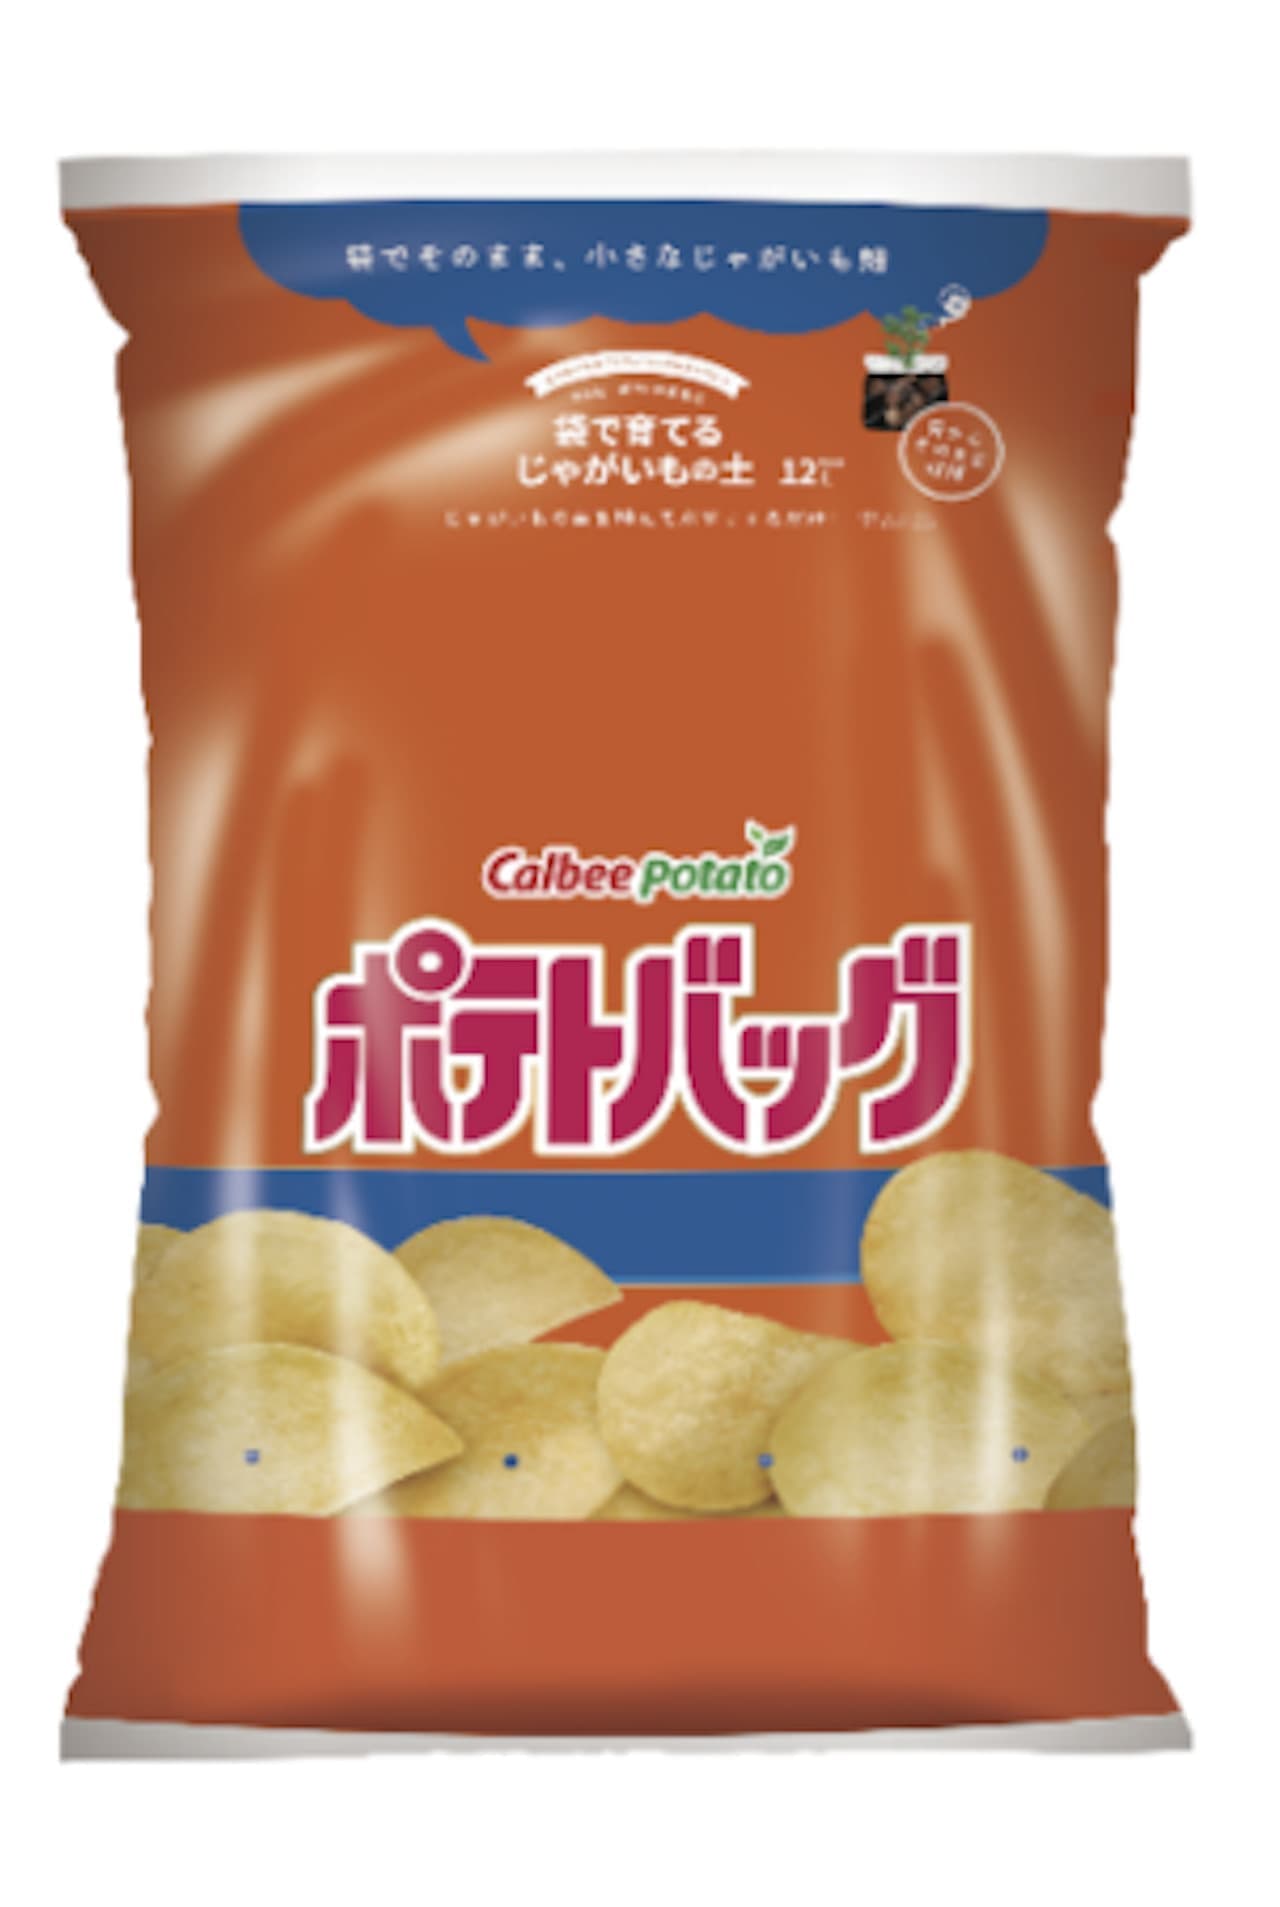 Potato bag, a potato soil grown in a bag